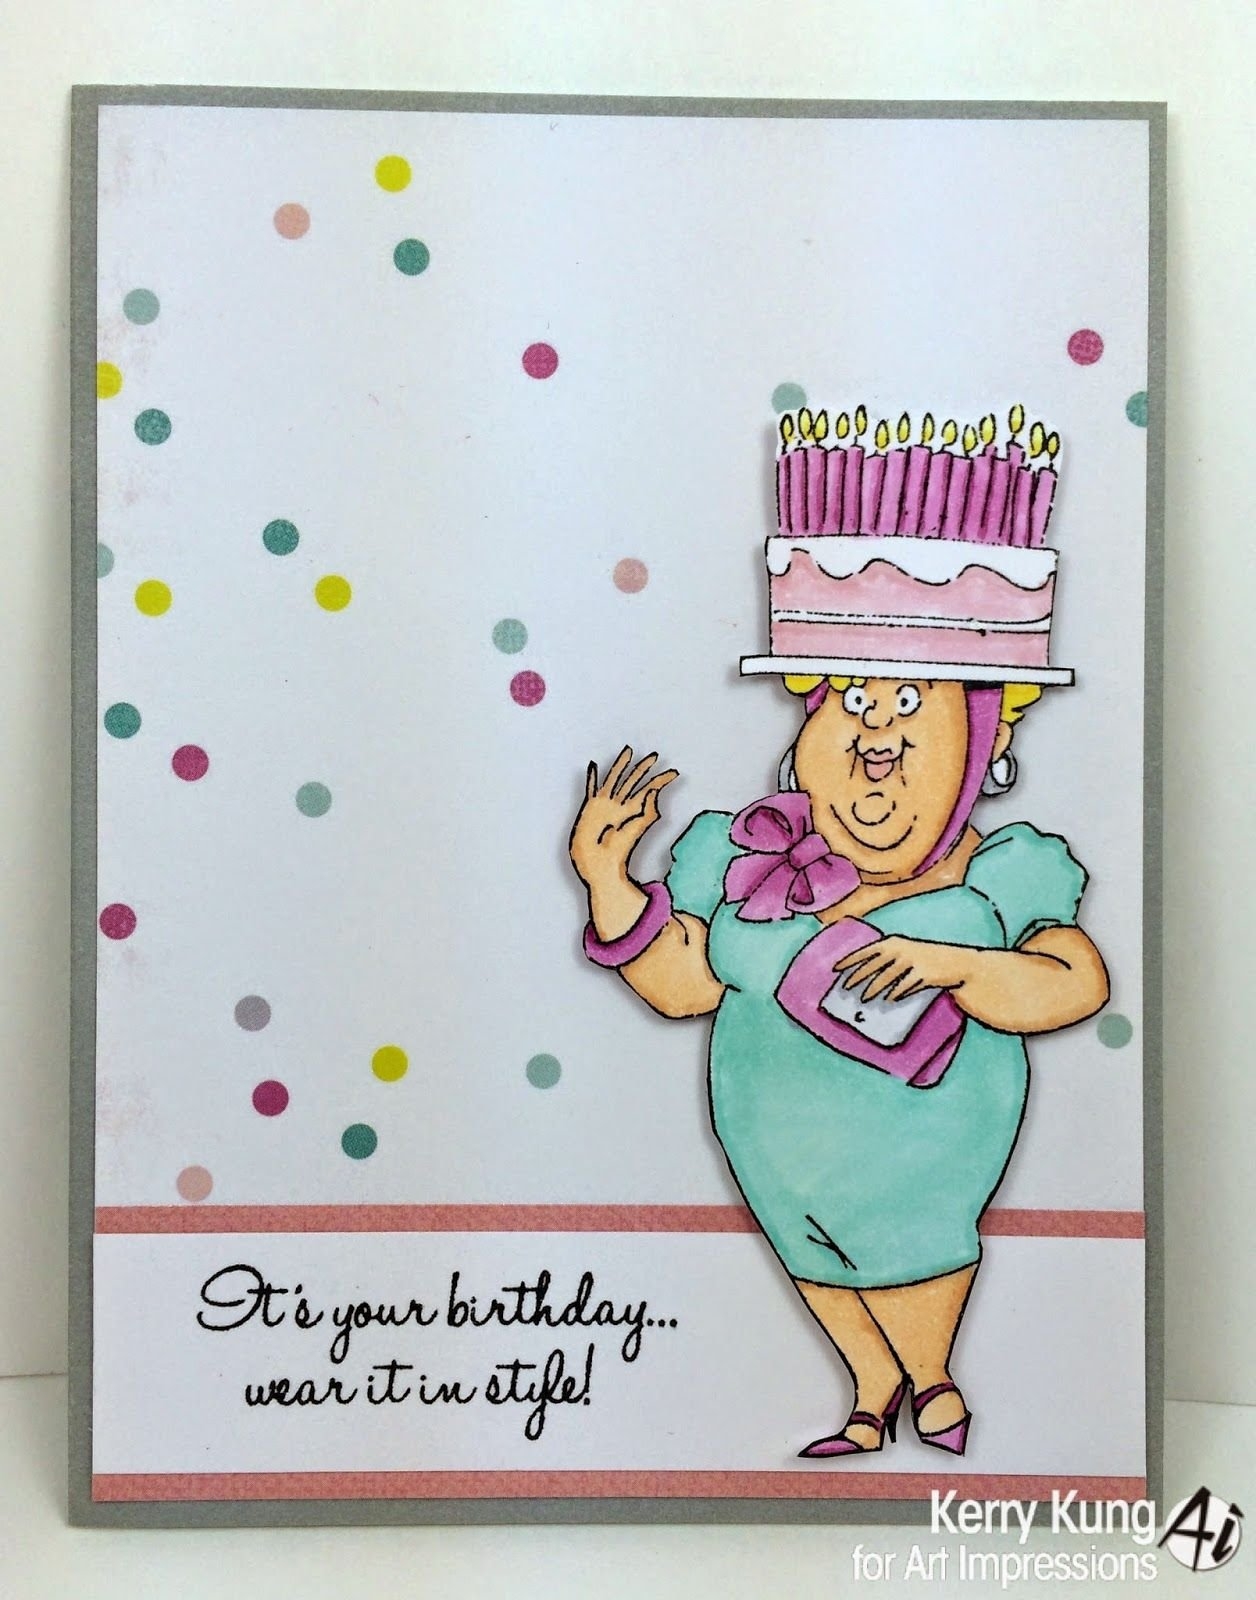 Пожелания бабушке на день рождения ( фото) 🔥 Прикольные картинки и юмор